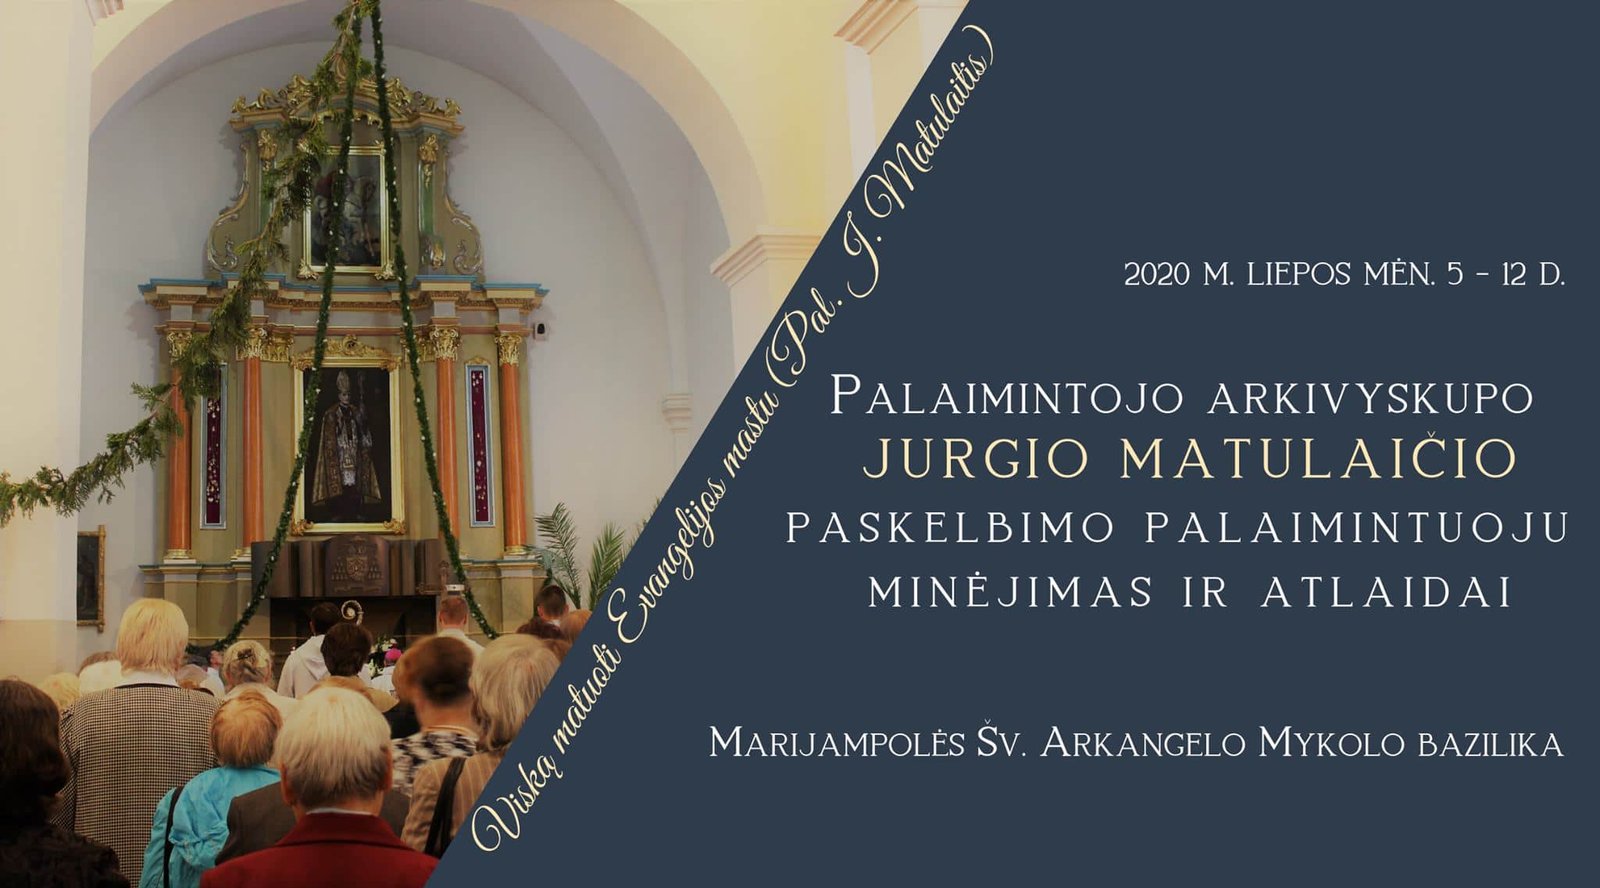 You are currently viewing Palaimintojo arkivyskupo JURGIO MATULAIČIO MIC paskelbimo palaimintuoju minėjimas ir atlaidai